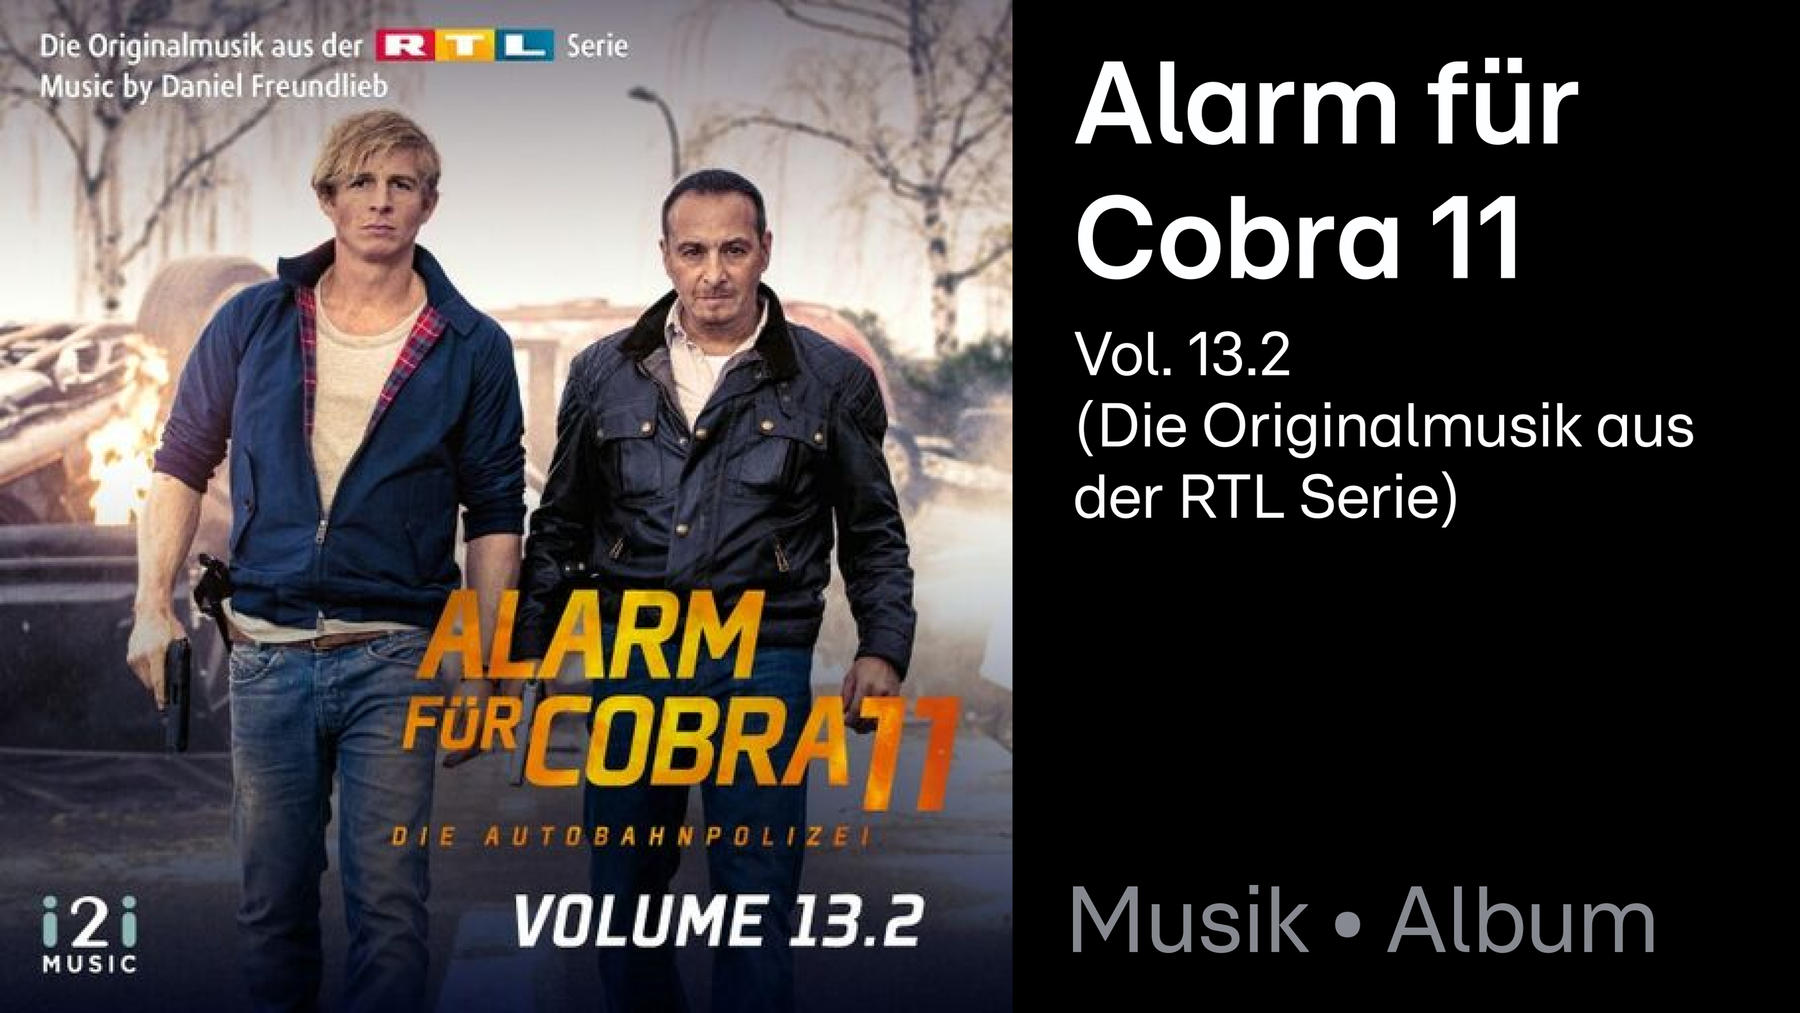 Album: Alarm für Cobra 11, Vol. 13.2 (Die Originalmusik aus der RTL Serie)